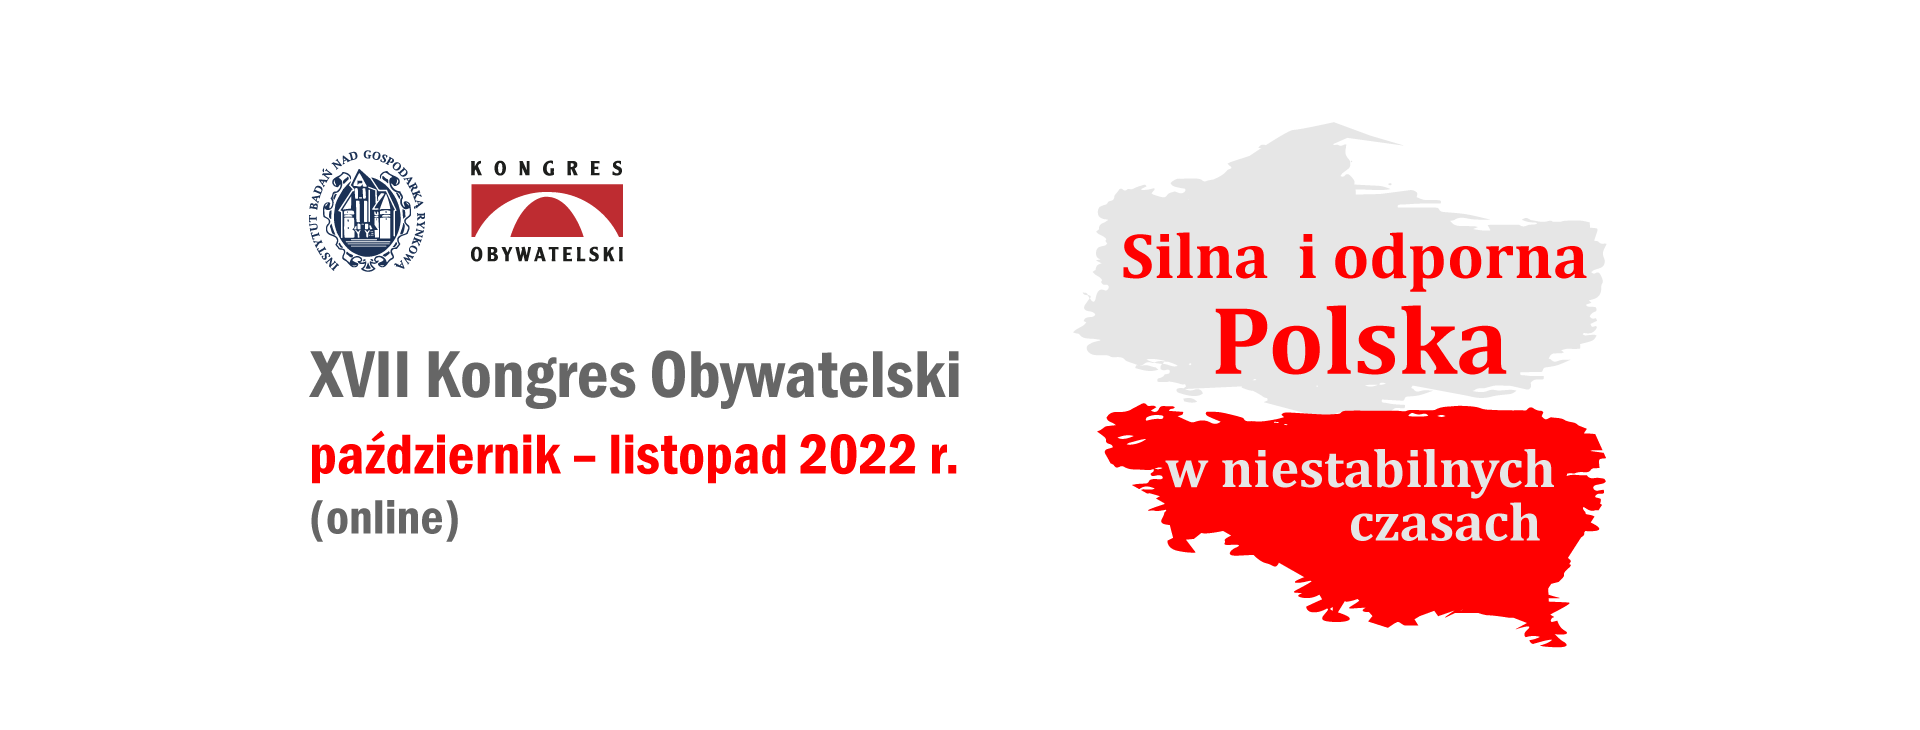 Hasło XVII Kongresu Obywatelskiego "Silna i odporna Polska w niestabilnych czasach"